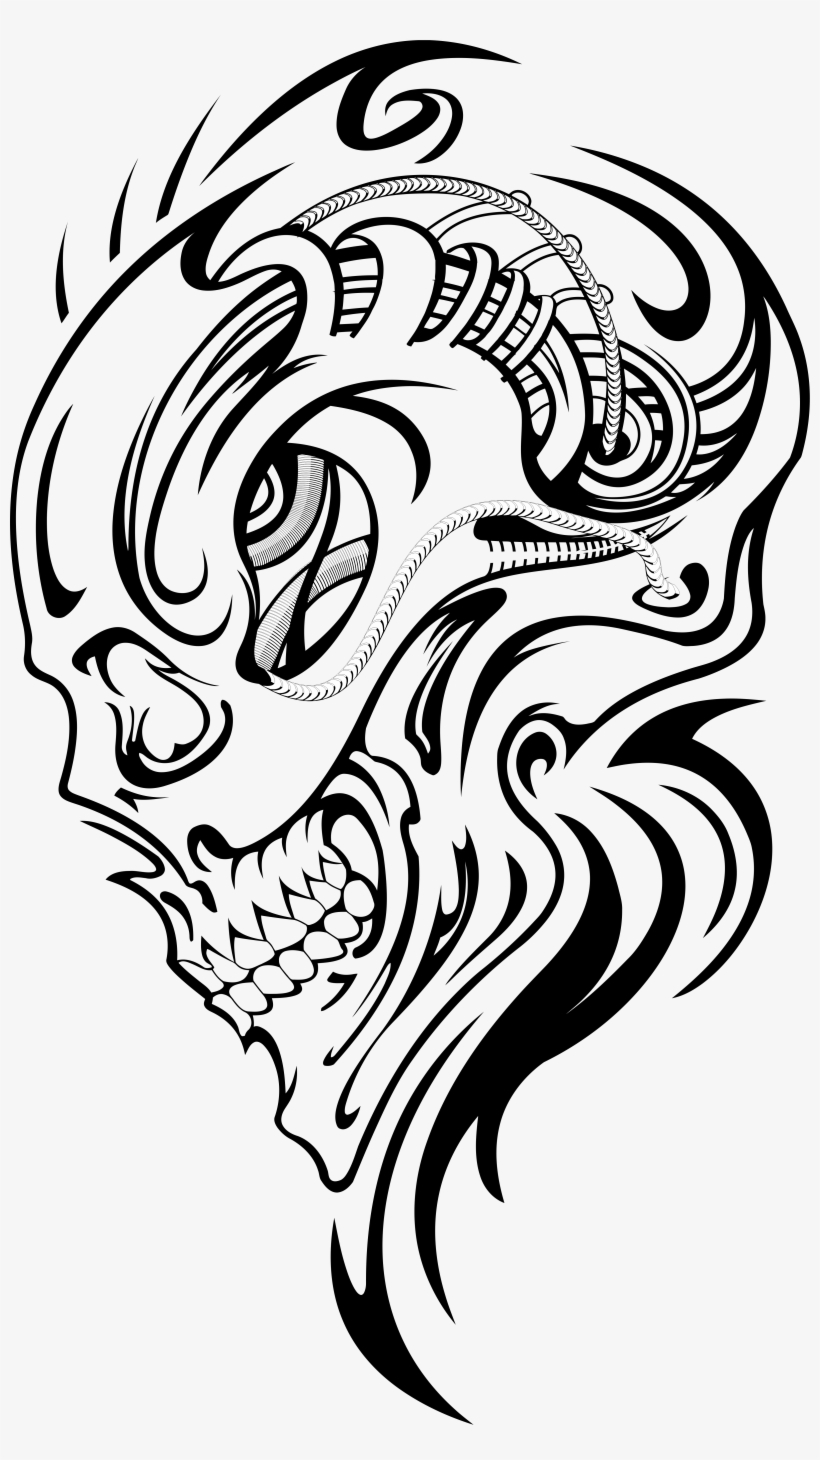 Art surreal skull tattoo. stock illustration. Illustration of fantasy -  87071847